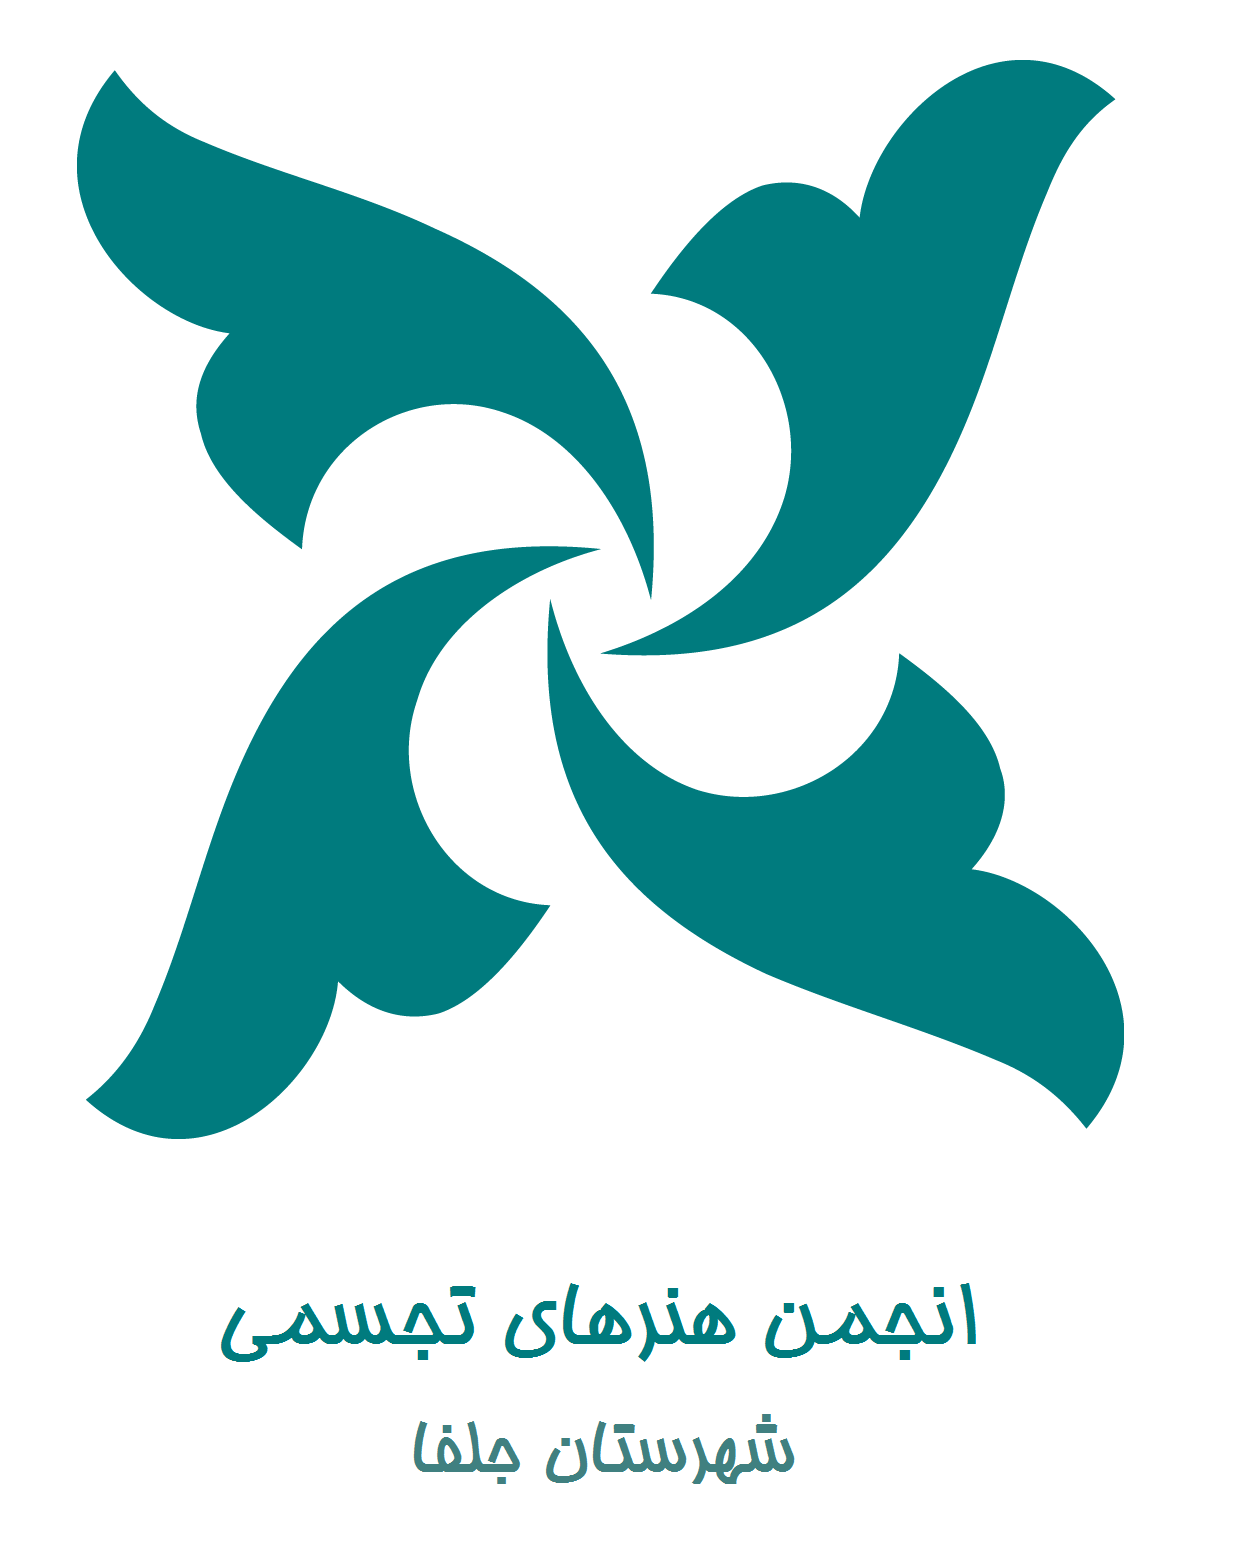 انجمن هنرهای تجسمی ایران